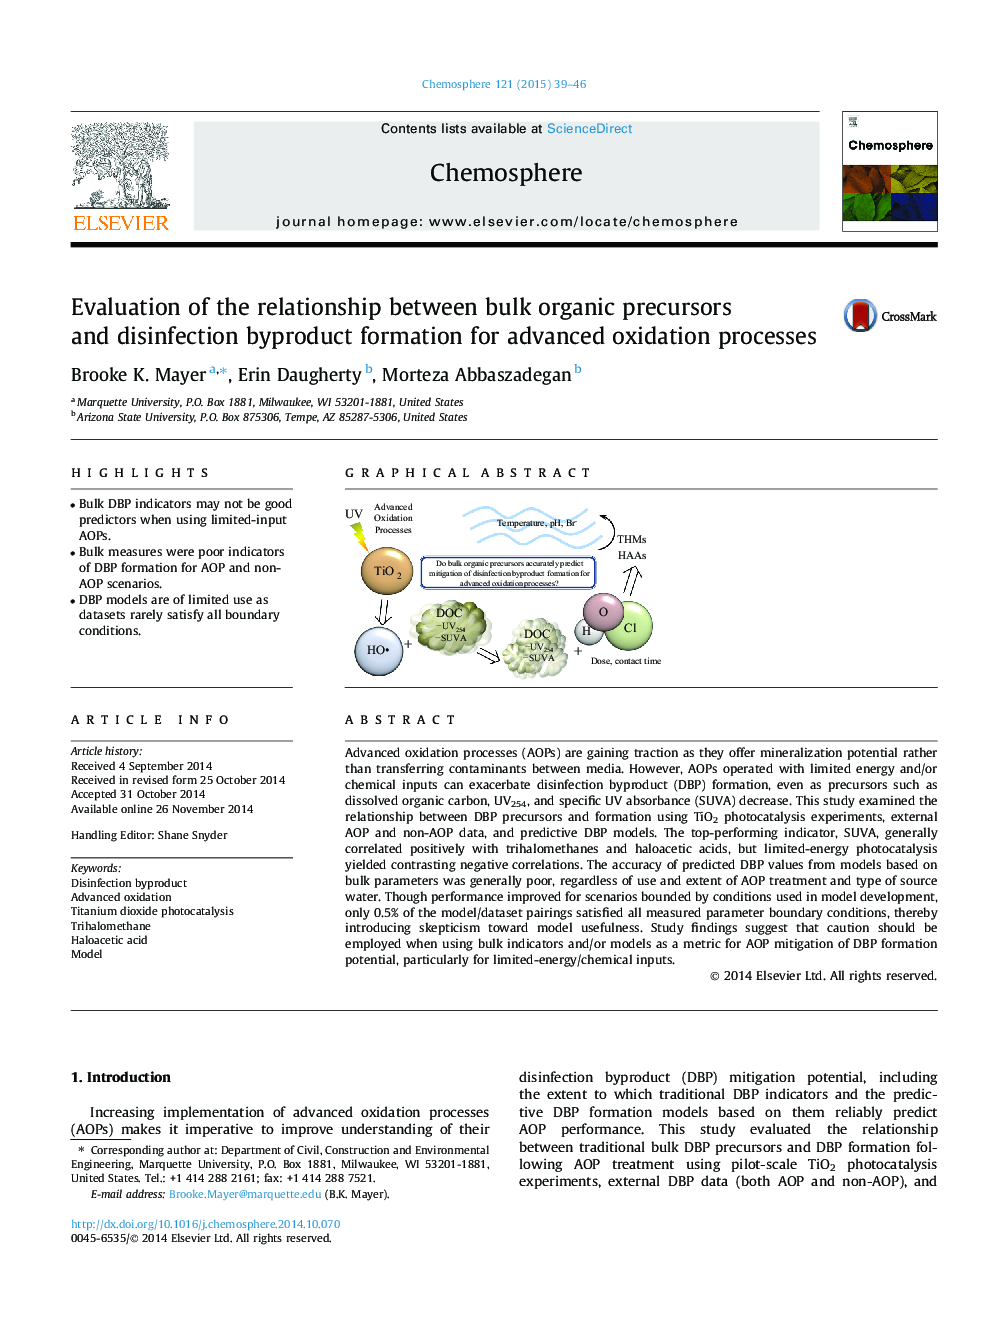 ارزیابی رابطه بین پیش سازهای عمده آلی و تشکیل فرآورده های ضد عفونی برای فرآیندهای اکسیداسیون پیشرفته 